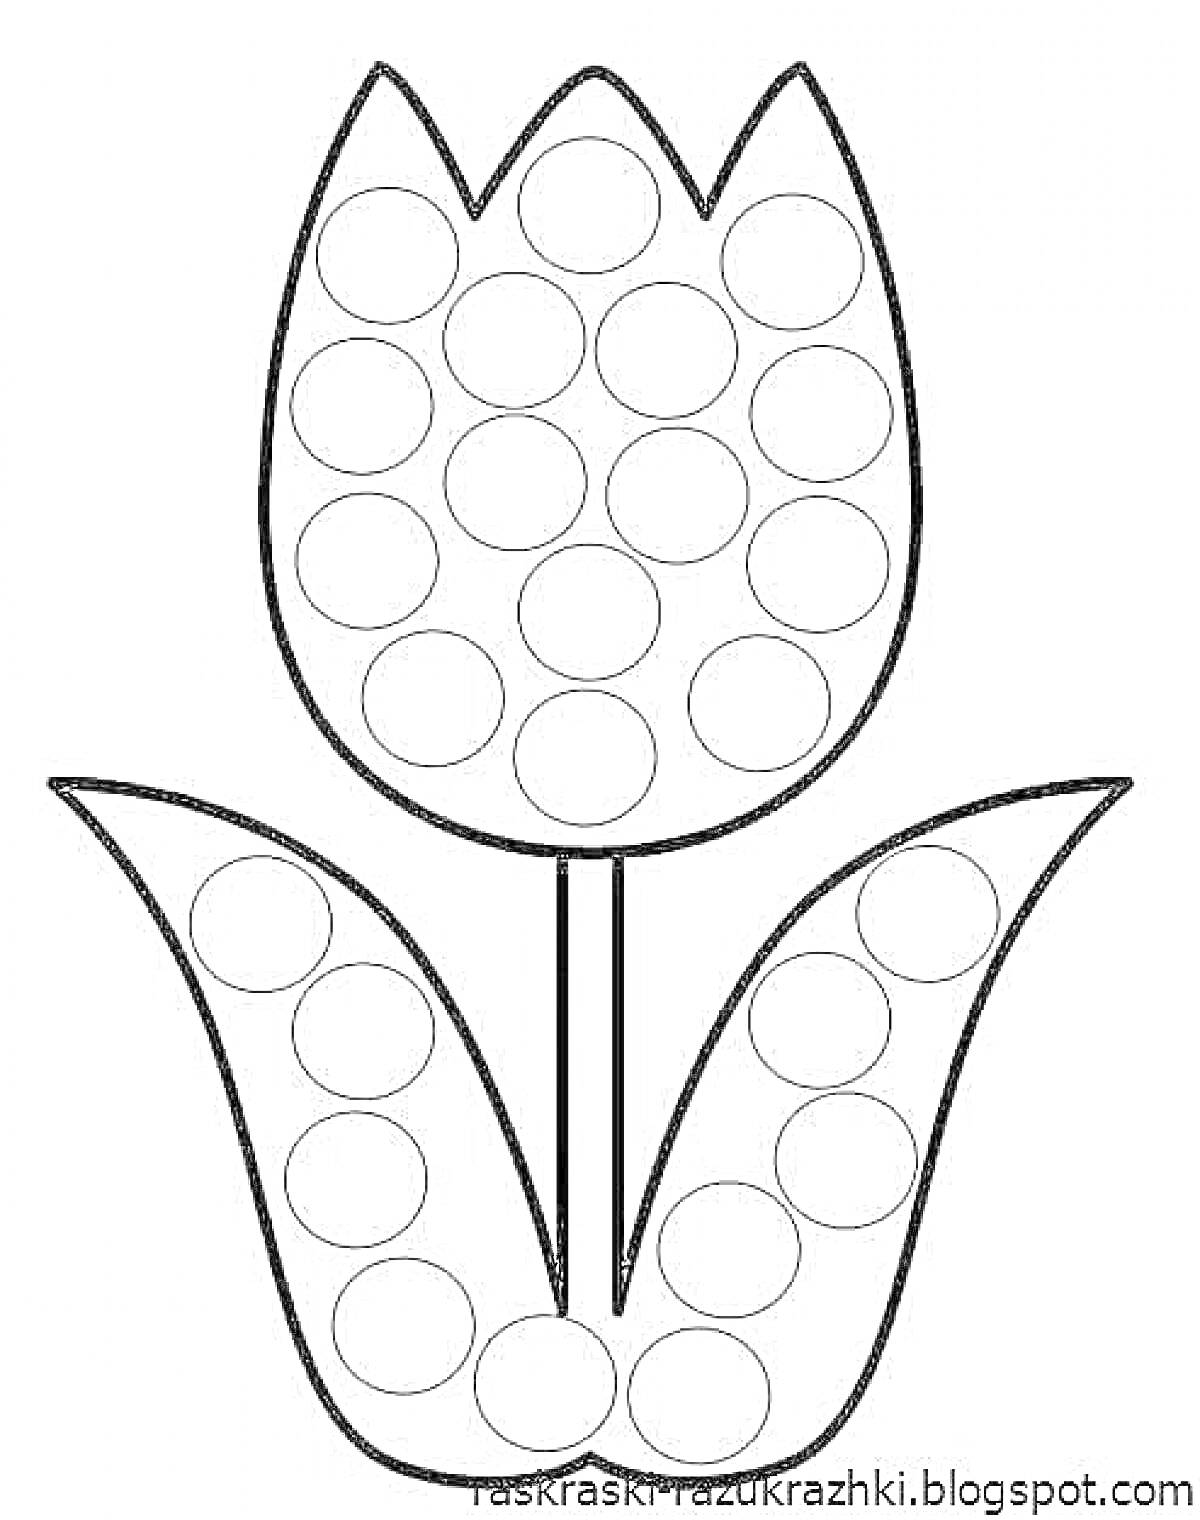 Раскраска Тюльпан с кругами для заполнения пластилином